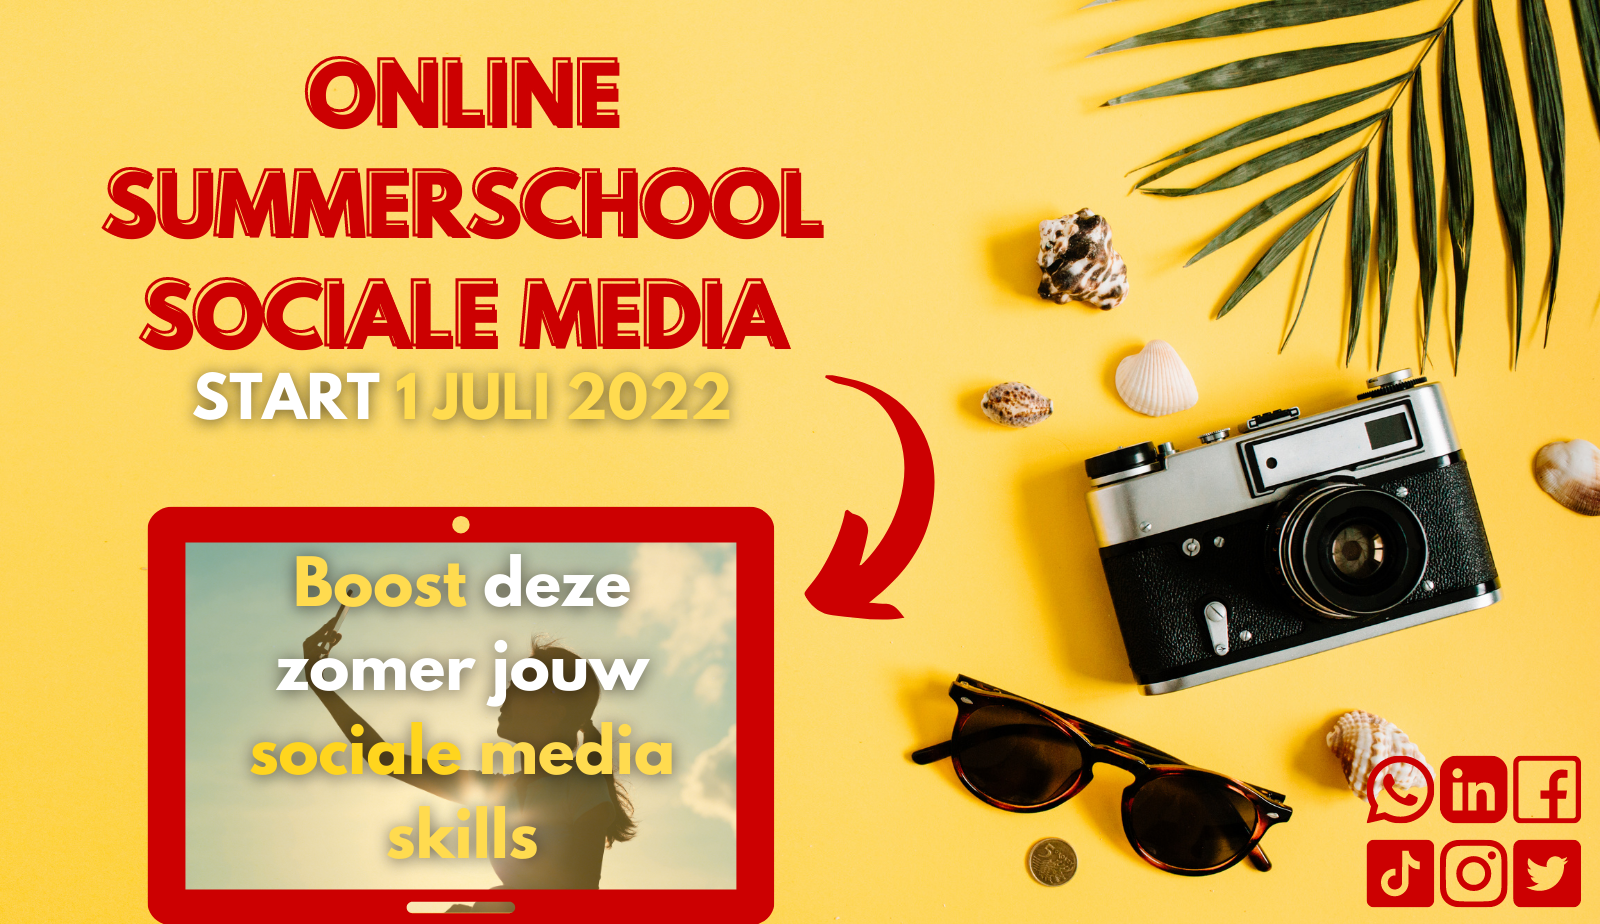 Online summerschool sociale media, deze zomer opleiding sociale media volgen, waar en wanneer jij wilt